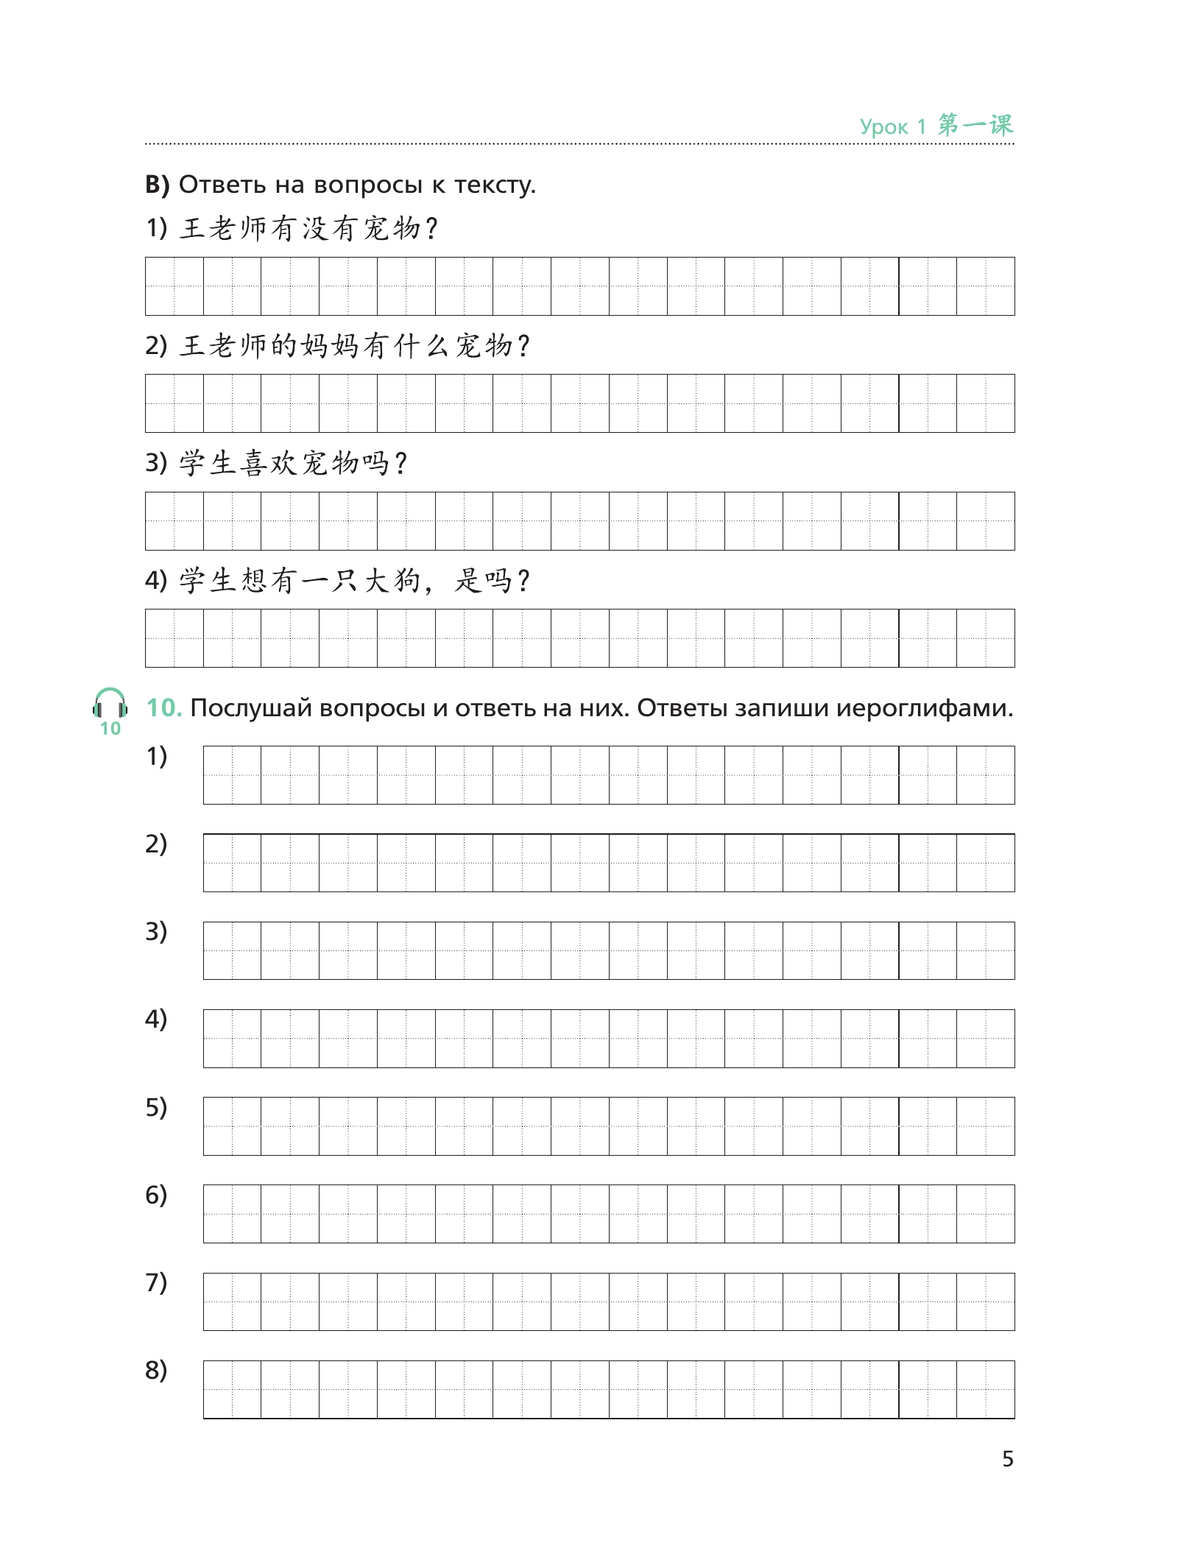 Китайский язык. Второй иностранный язык. Рабочая тетрадь. 6 класс 3